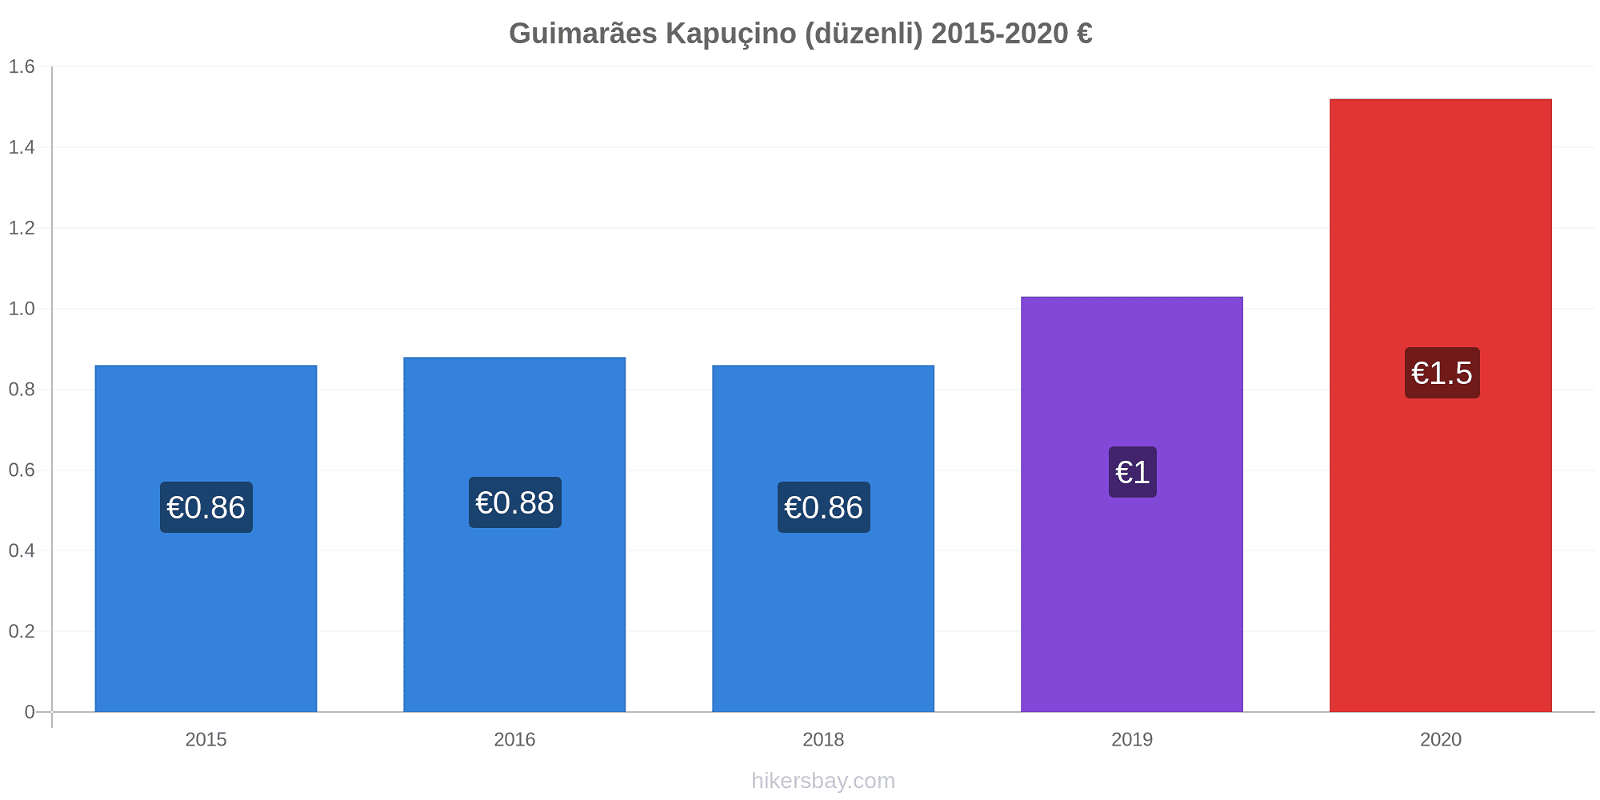 Guimarães fiyat değişiklikleri Kapuçino (düzenli) hikersbay.com